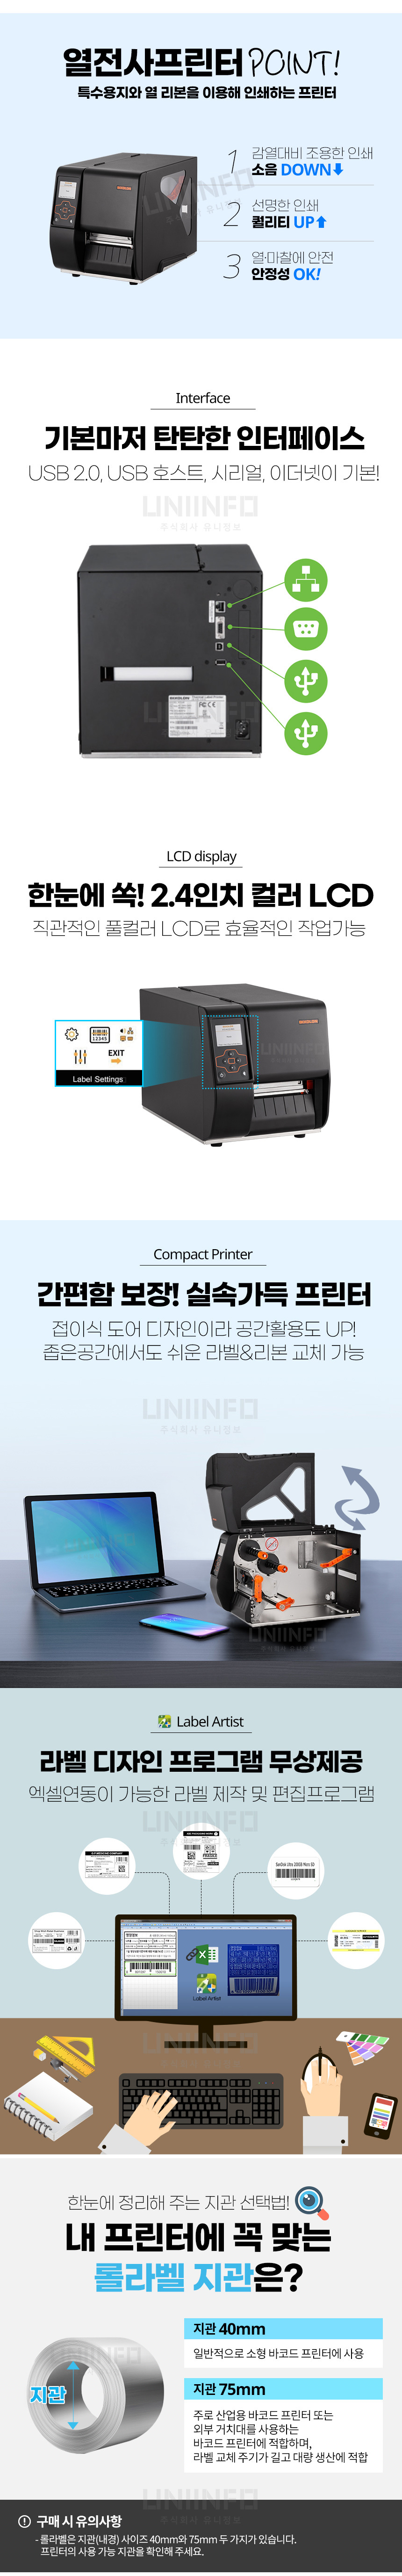 열전사프린터 장점 저소음 선명하 안정성 내구성 좋은 라벨 인쇄 가능 인터페이스 다양한 연결 가능